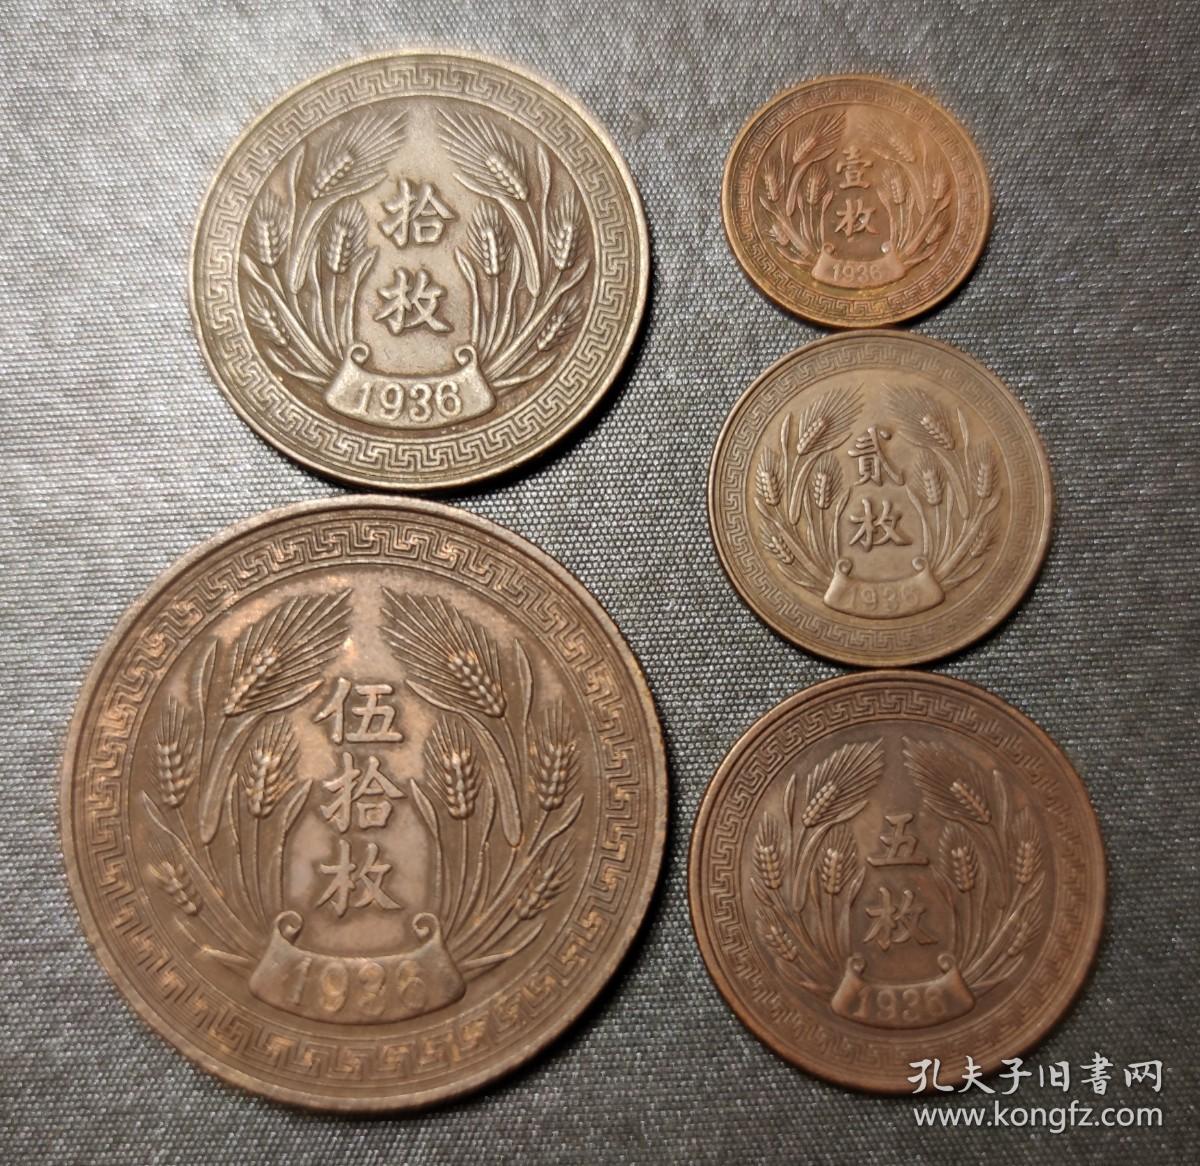 1062号  中华民国二十五年嘉禾系列铜币大全套